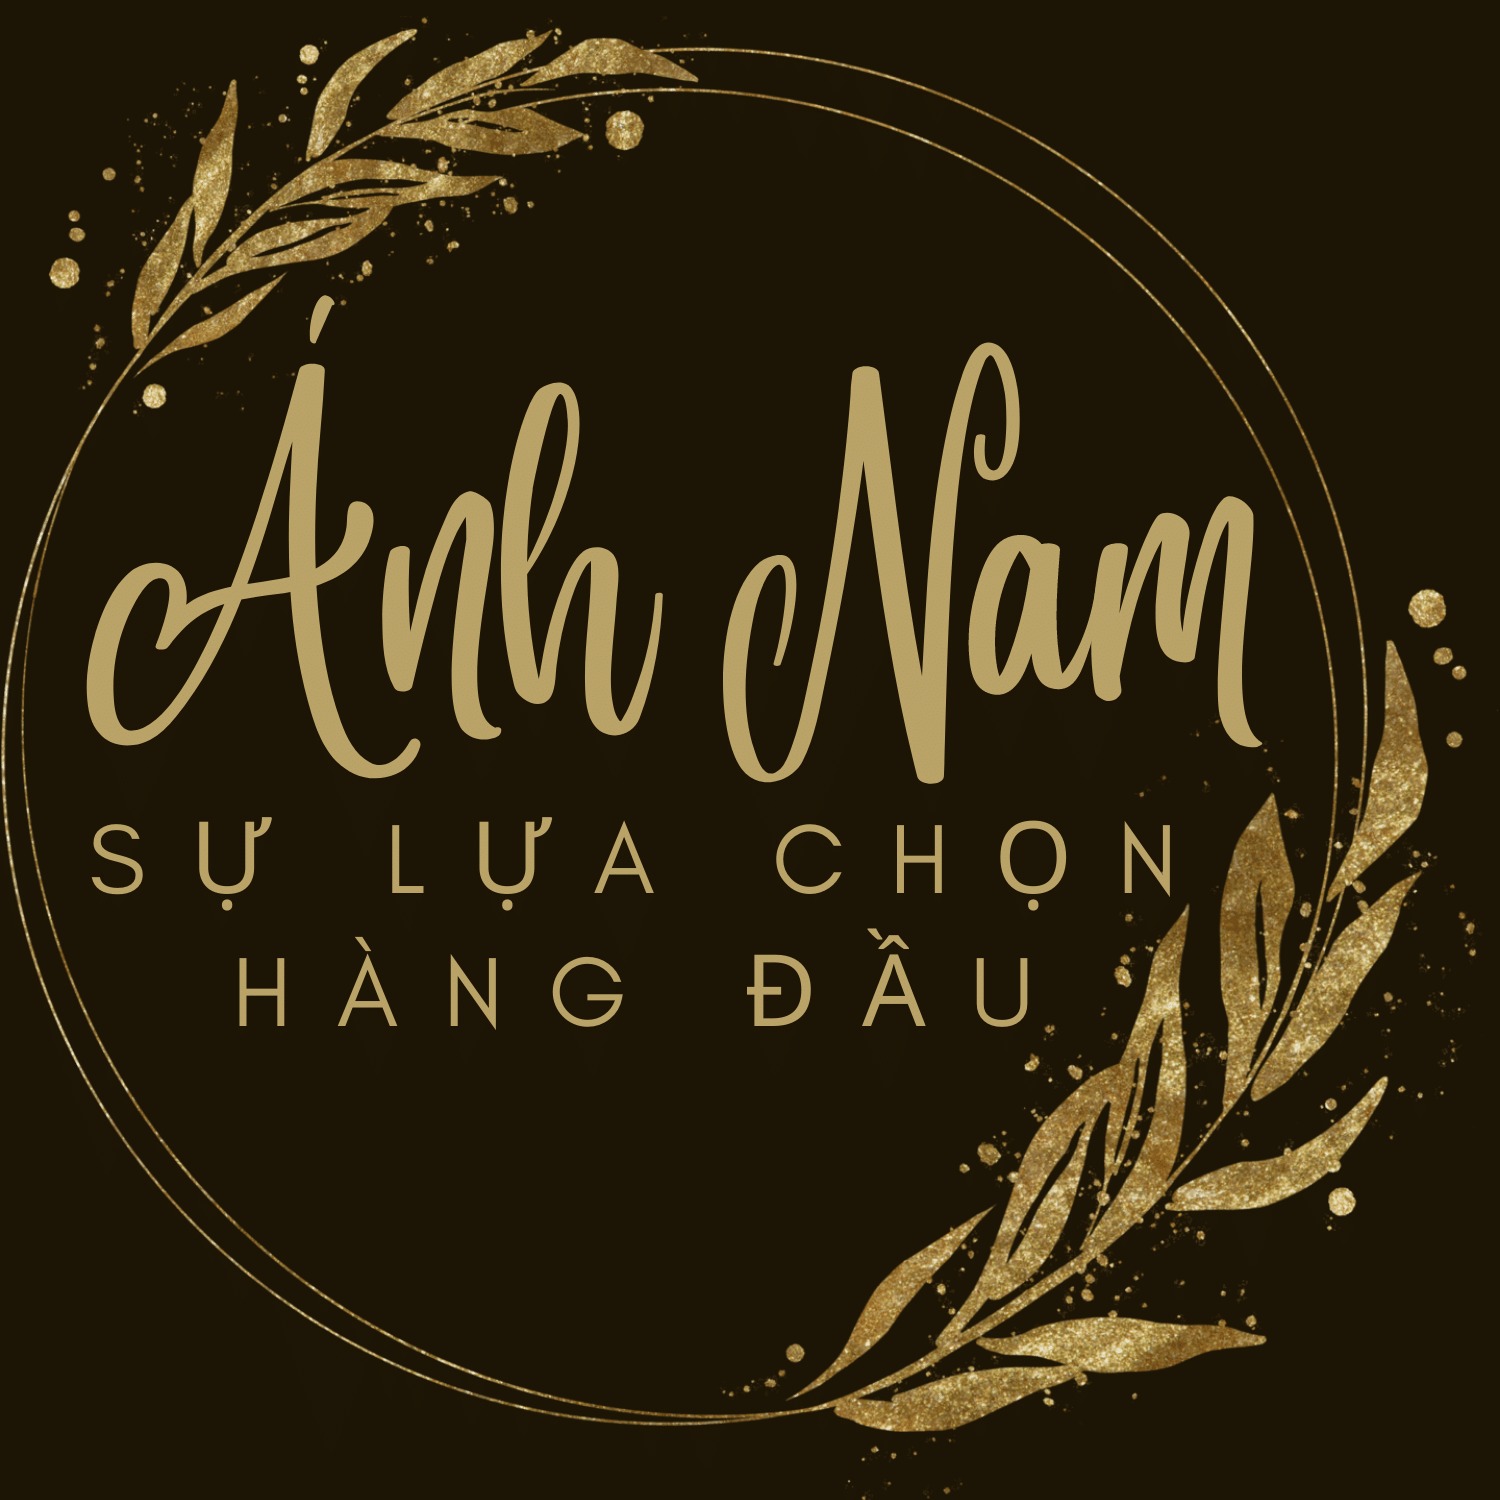 Ánh Nam Store